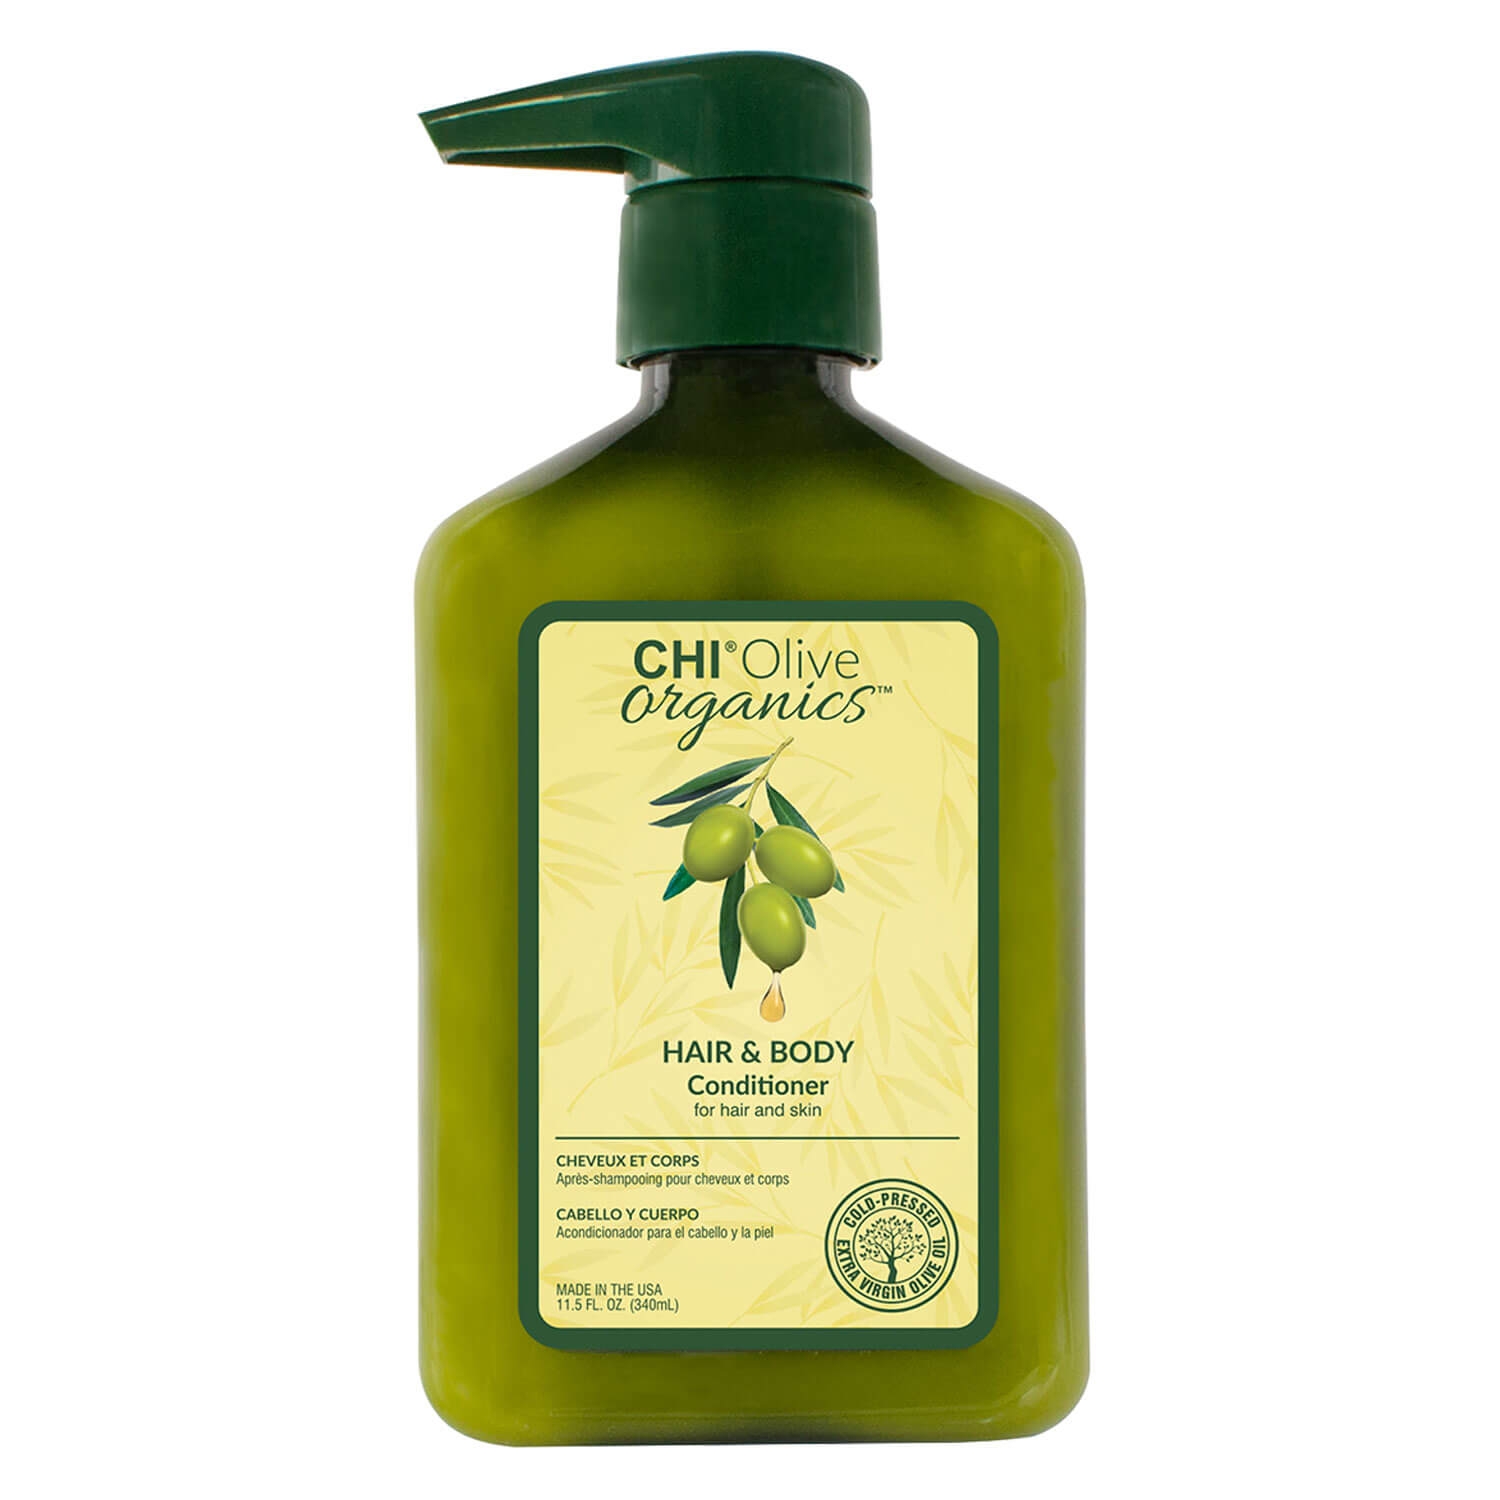 Produktbild von CHI Olive Organics - Hair & Body Conditioner